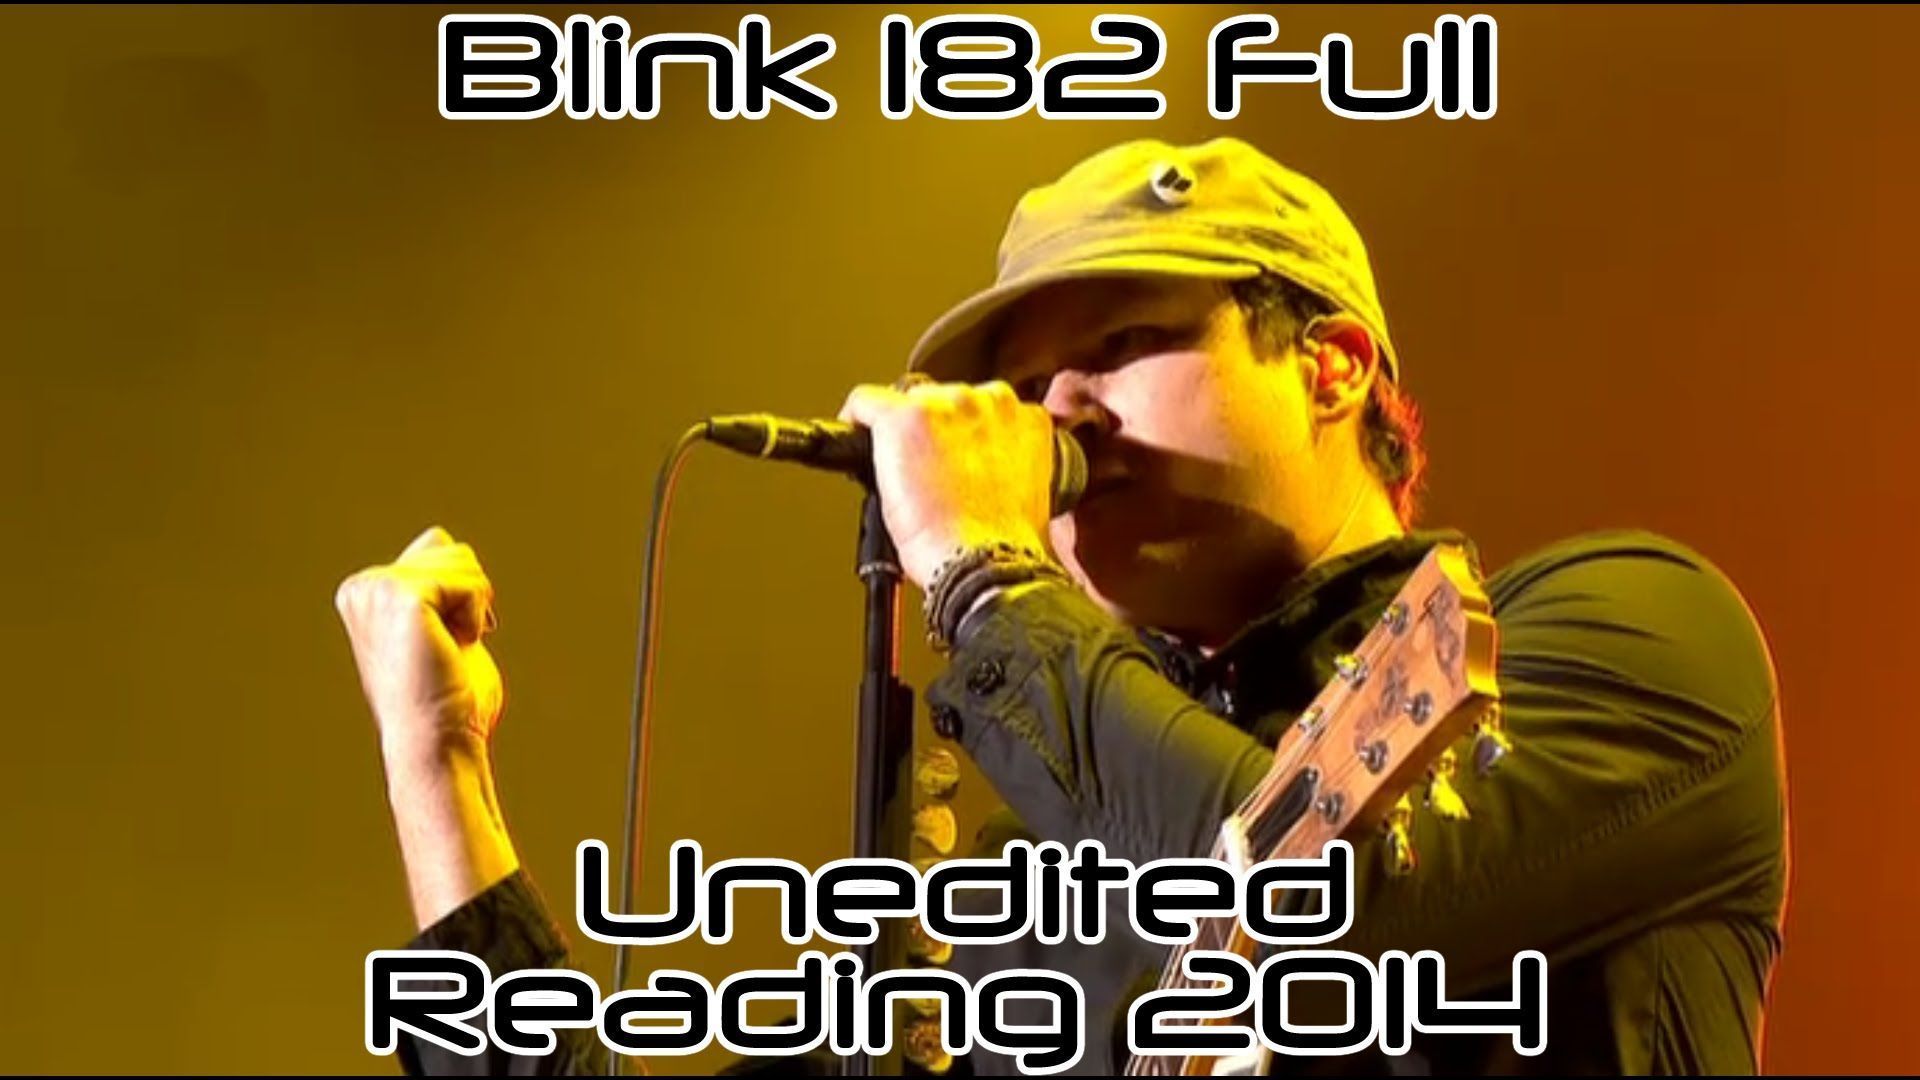 Blink-182 Reading 2014 Full HD 1080p NOT EDITED!